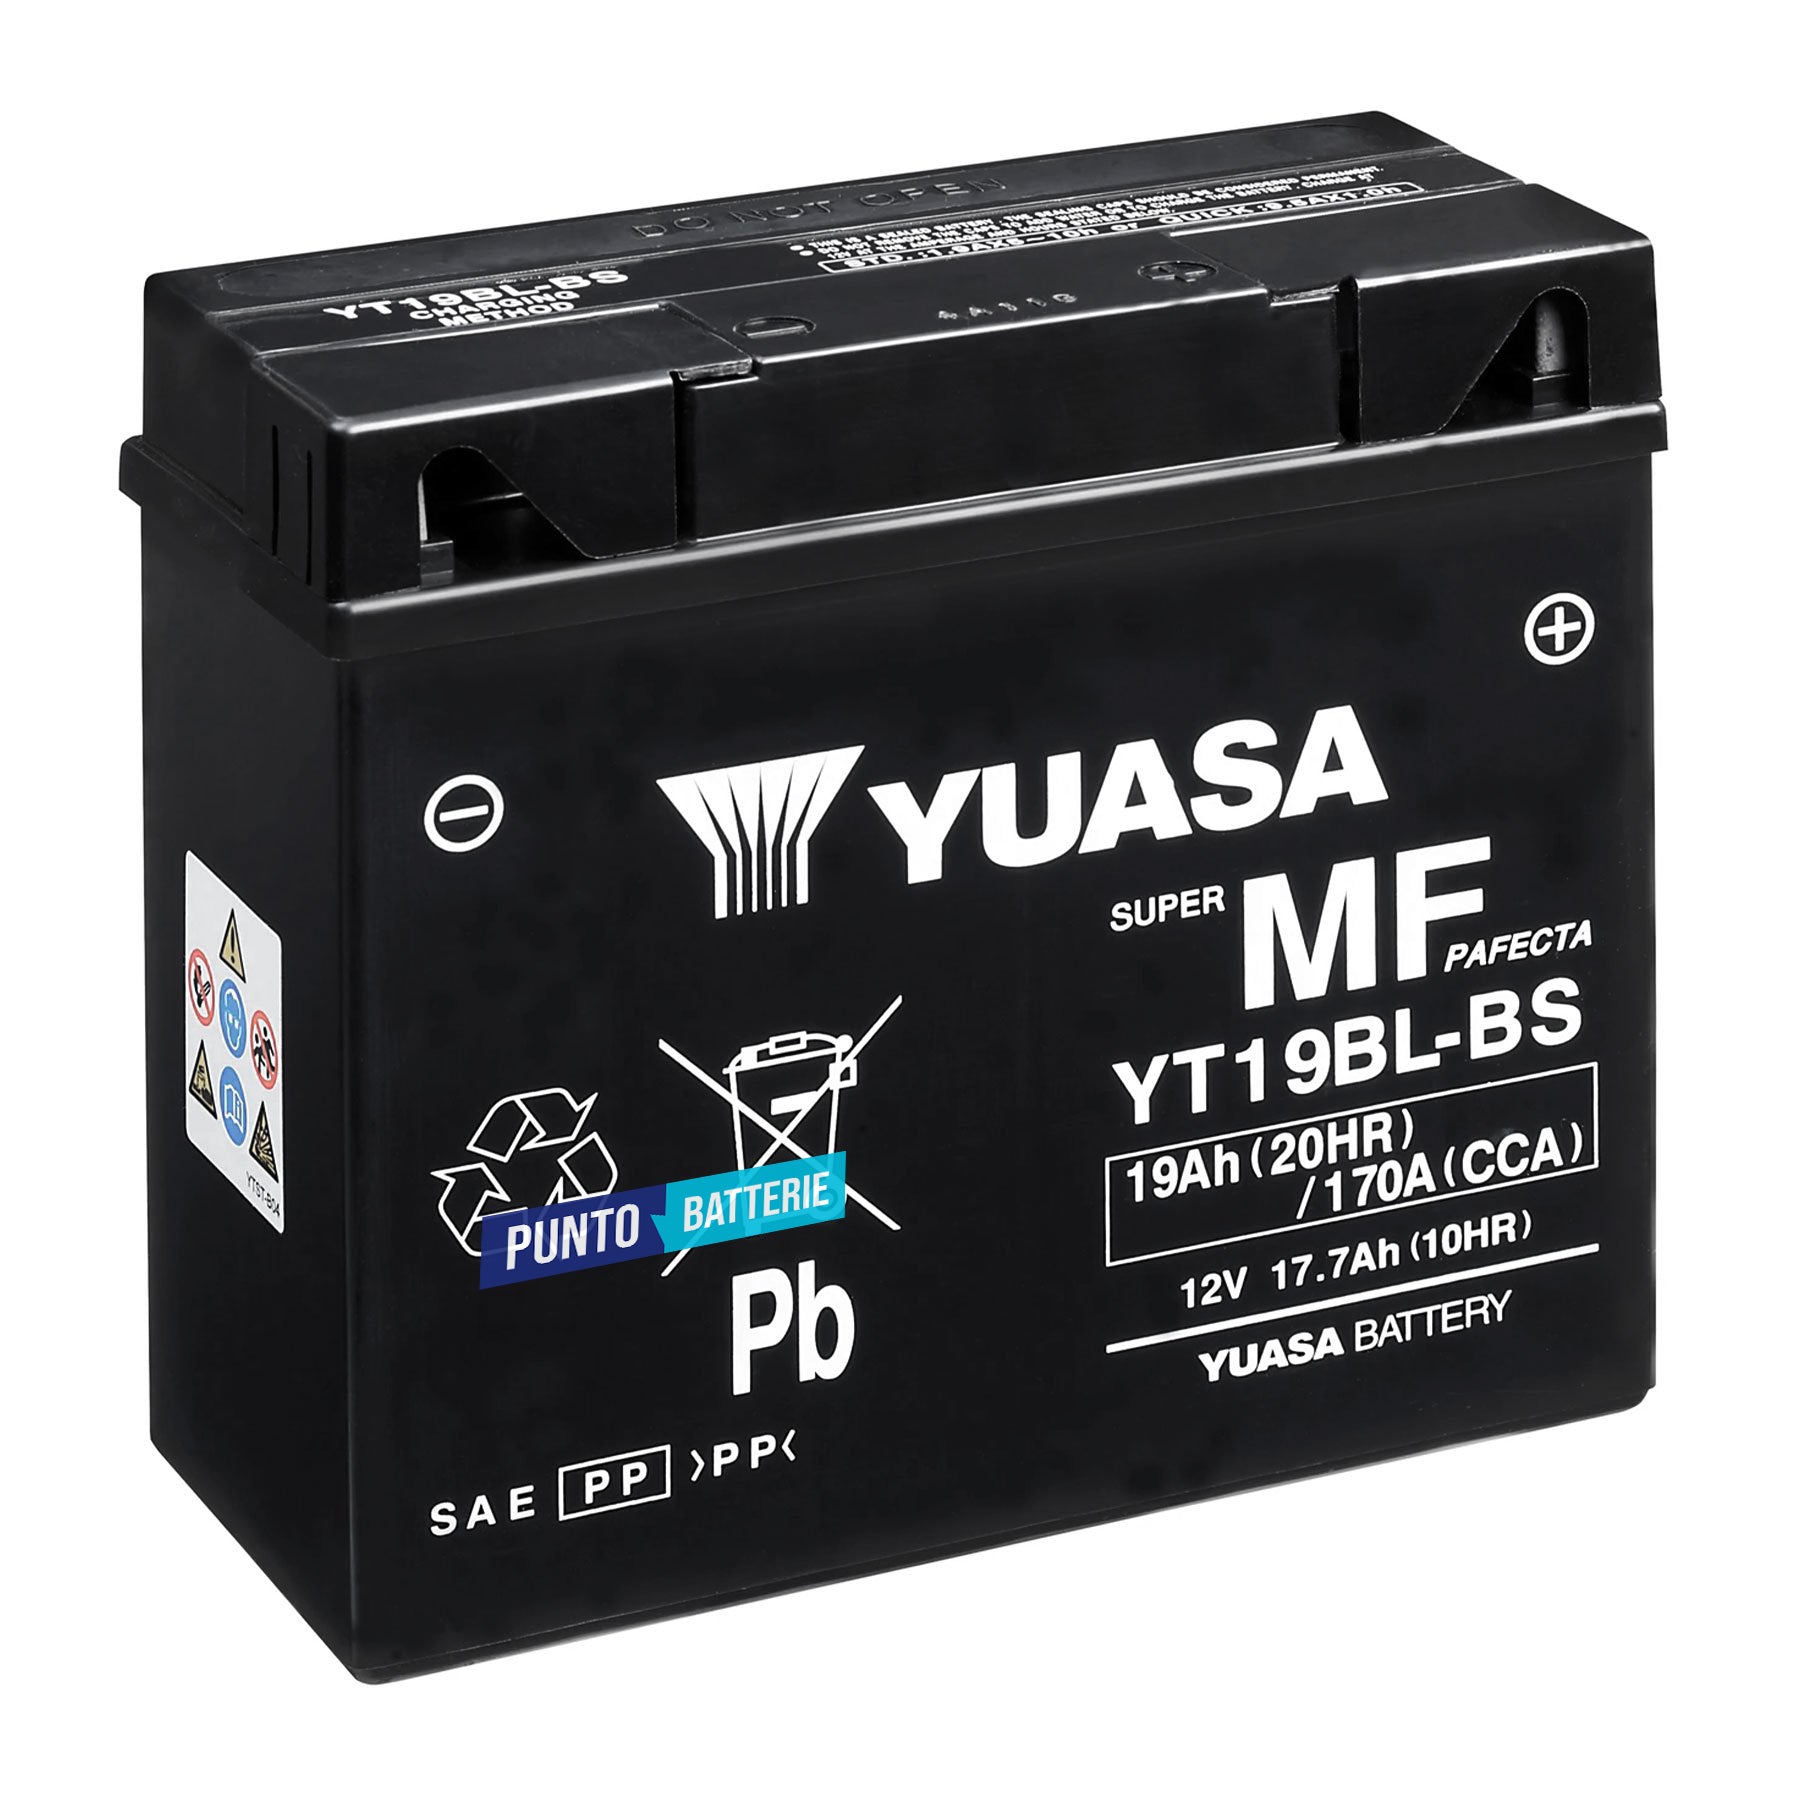 Batteria originale Yuasa YT YT19BL-BS, dimensioni 186 x 82 x 171, polo positivo a destra, 12 volt, 17 amperora, 170 ampere. Batteria per moto, scooter e powersport.